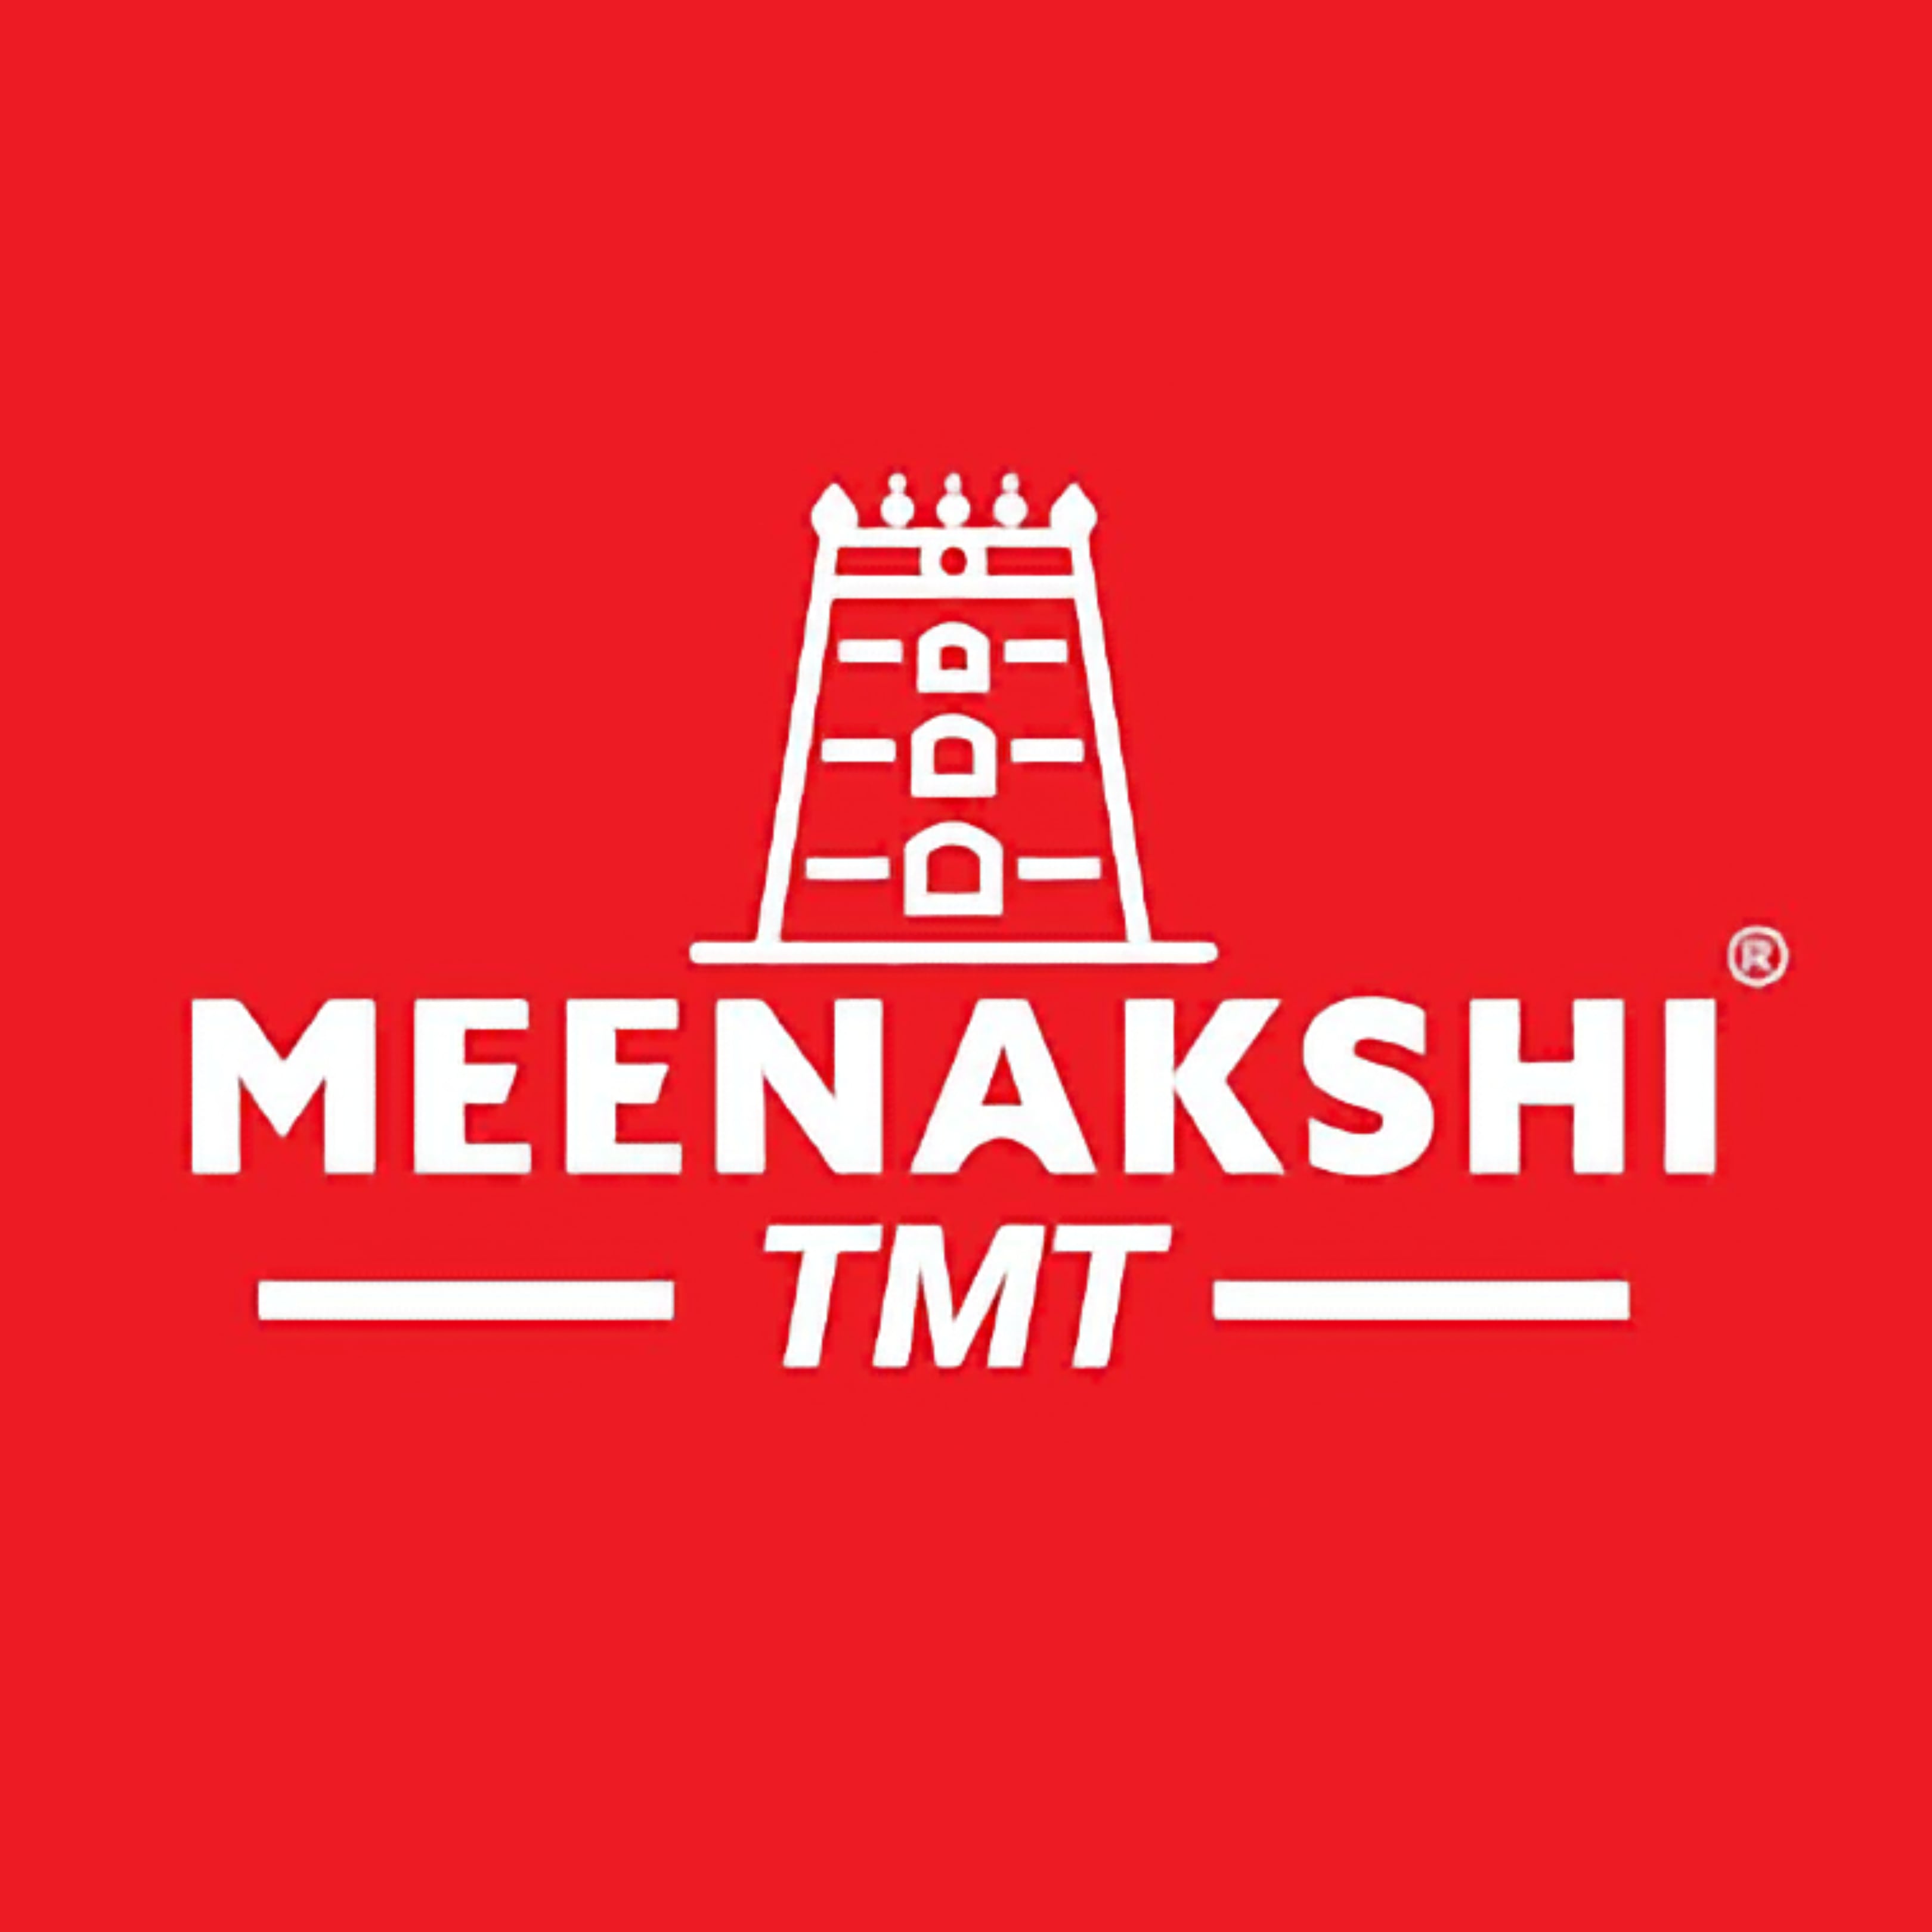 Meenakshi TMT